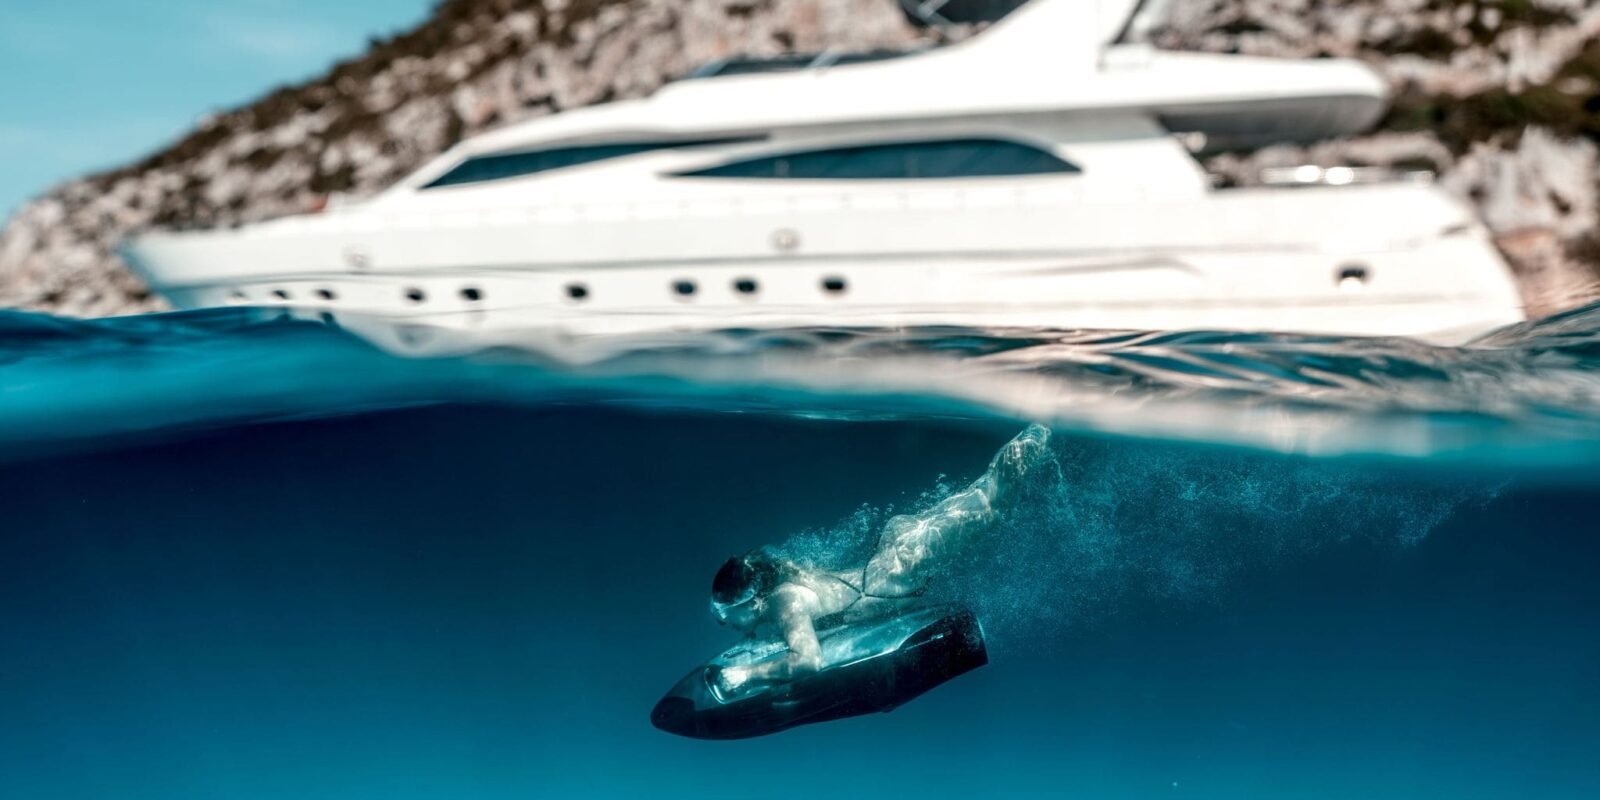 Vemos un yate de lujo junto a una persona que practica submarinismo en las aguas turquesas de una cala de Formentera.